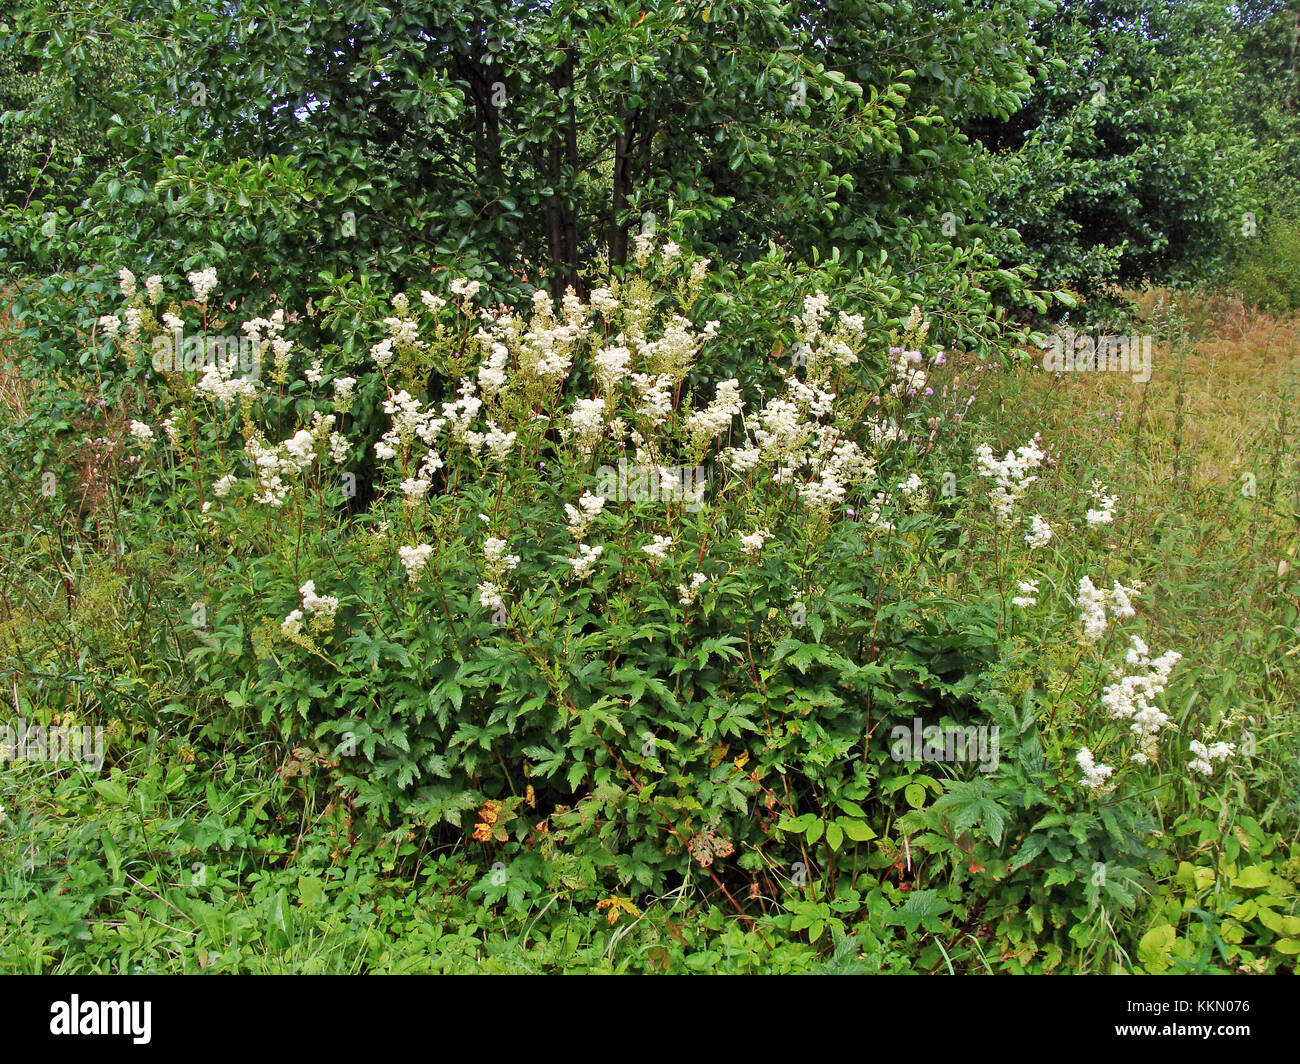 Flowering perennial herb meadowsweet or mead wort growing in damp meadow Stock Photo